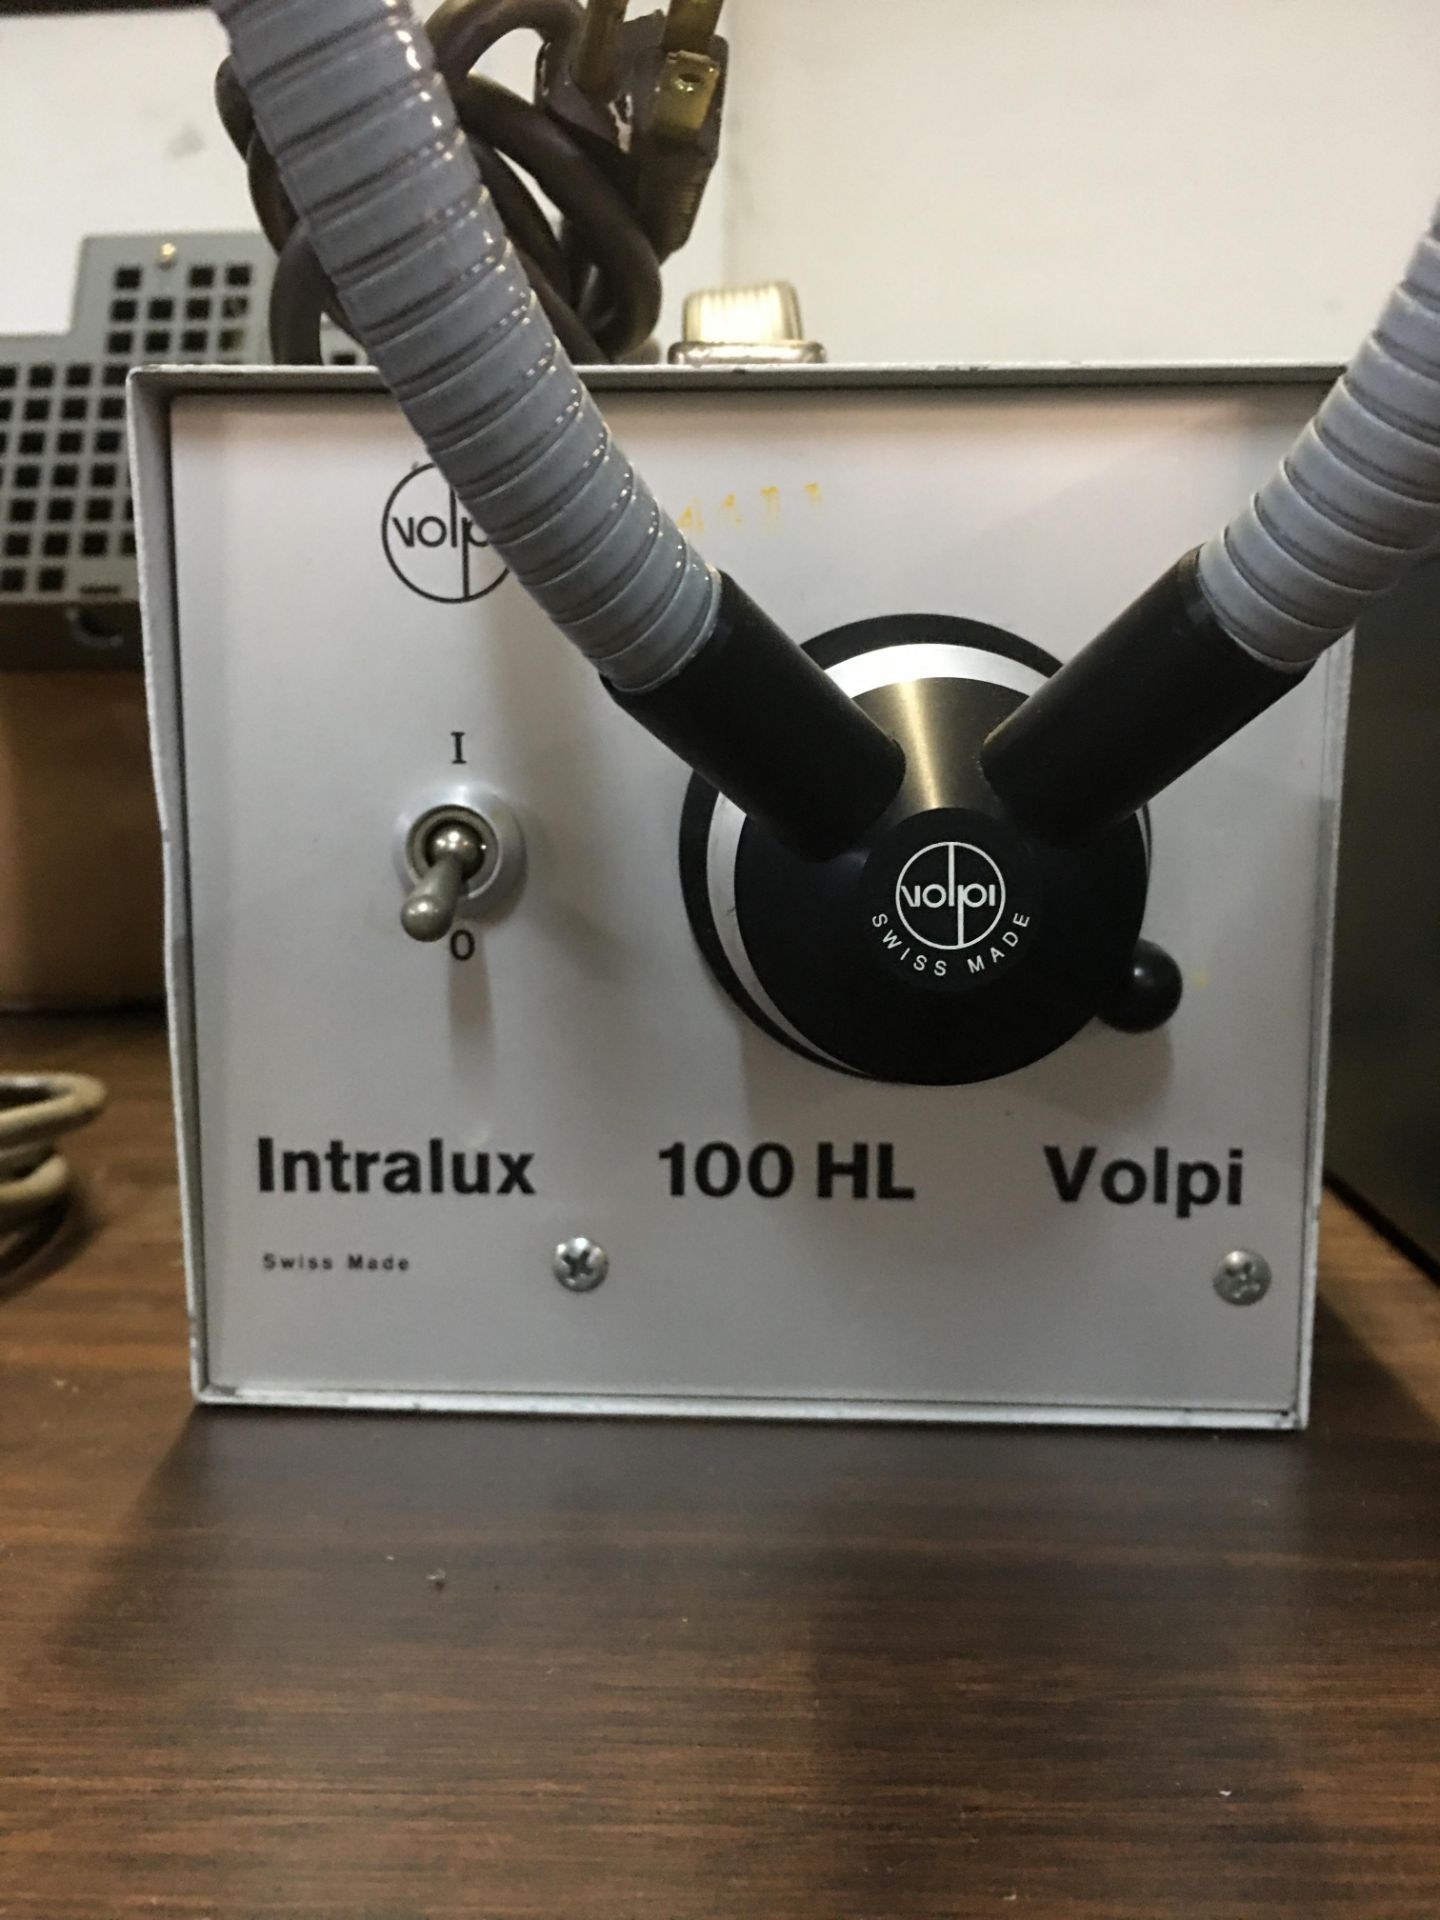 Intralux Volpi 100HL Fiberoptic Illuminator - Image 2 of 3